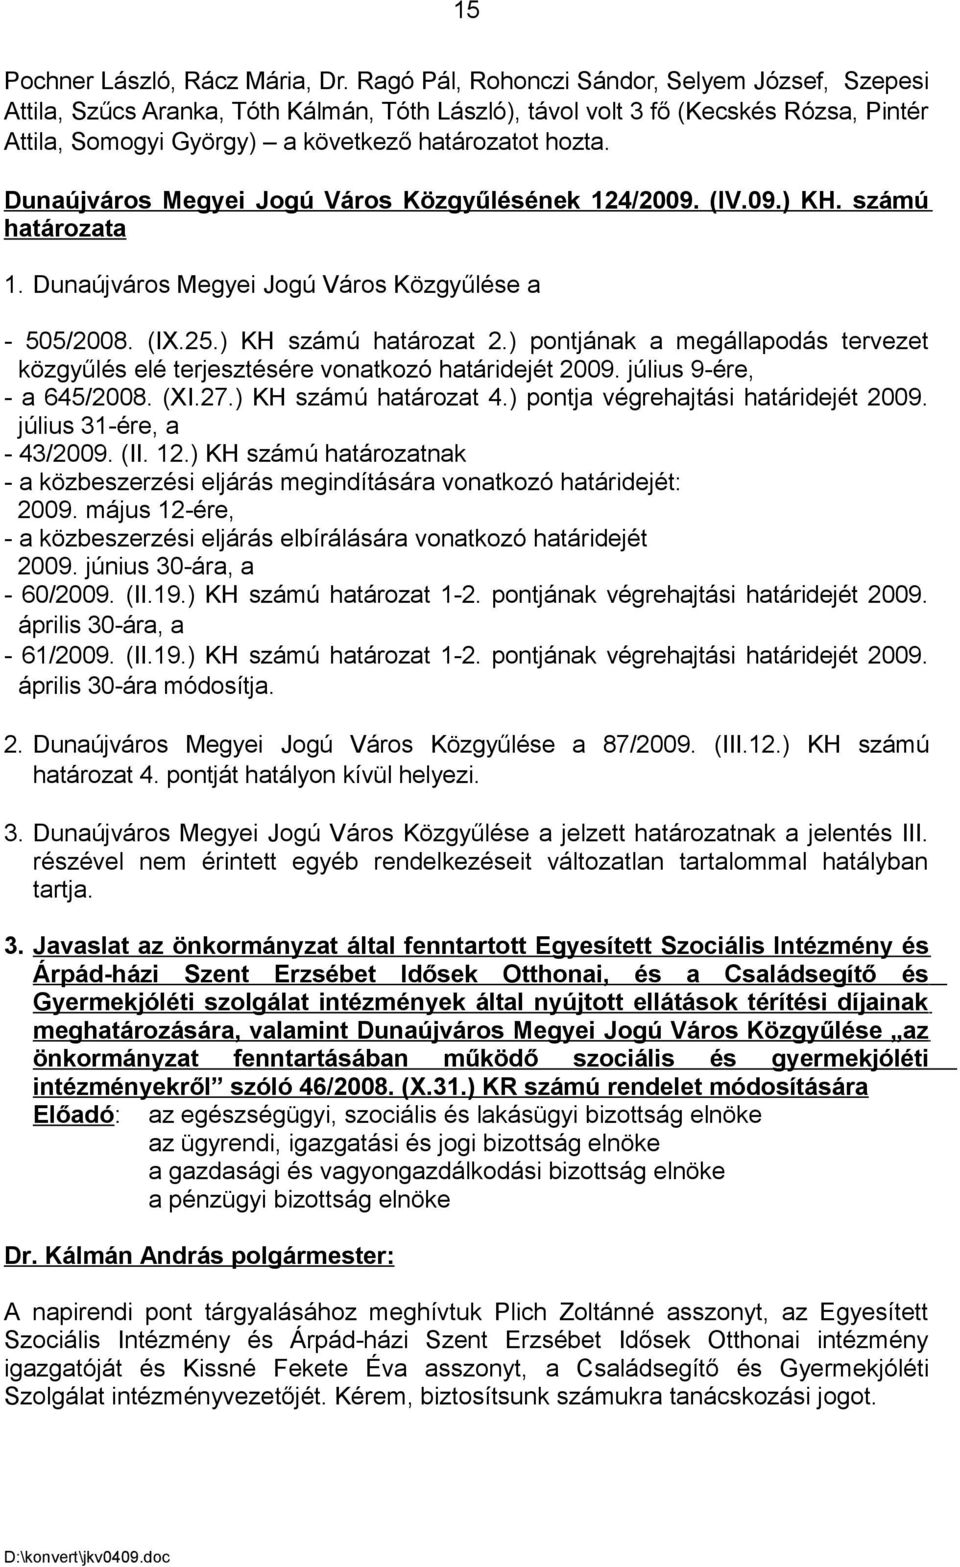 Dunaújváros Megyei Jogú Város Közgyűlésének 124/2009. (IV.09.) KH. számú határozata 1. Dunaújváros Megyei Jogú Város Közgyűlése a - 505/2008. (IX.25.) KH számú határozat 2.